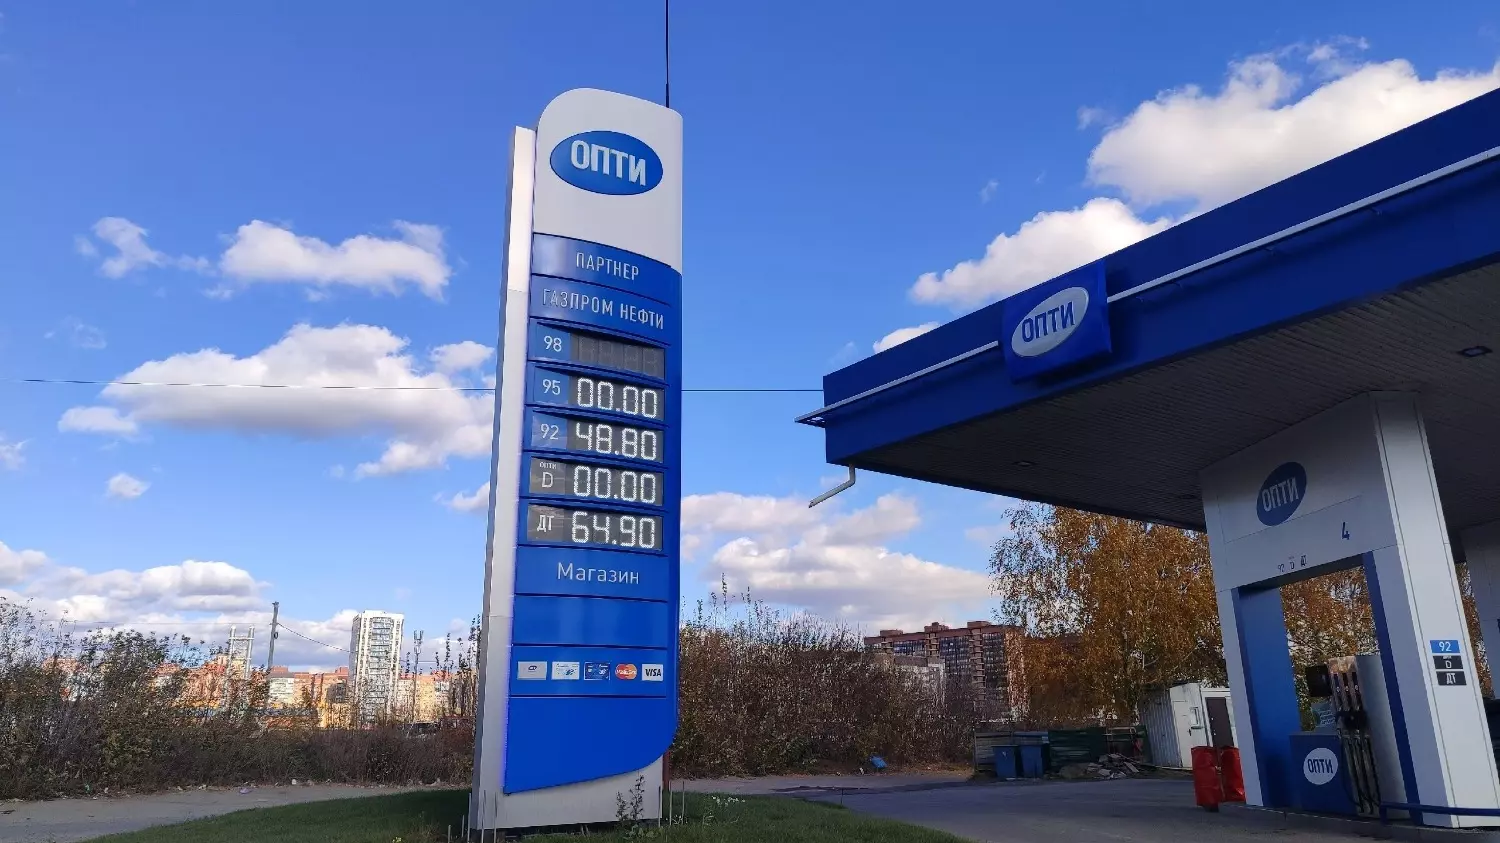 Заправка партнерской сети "Опти" в Новосибирске.